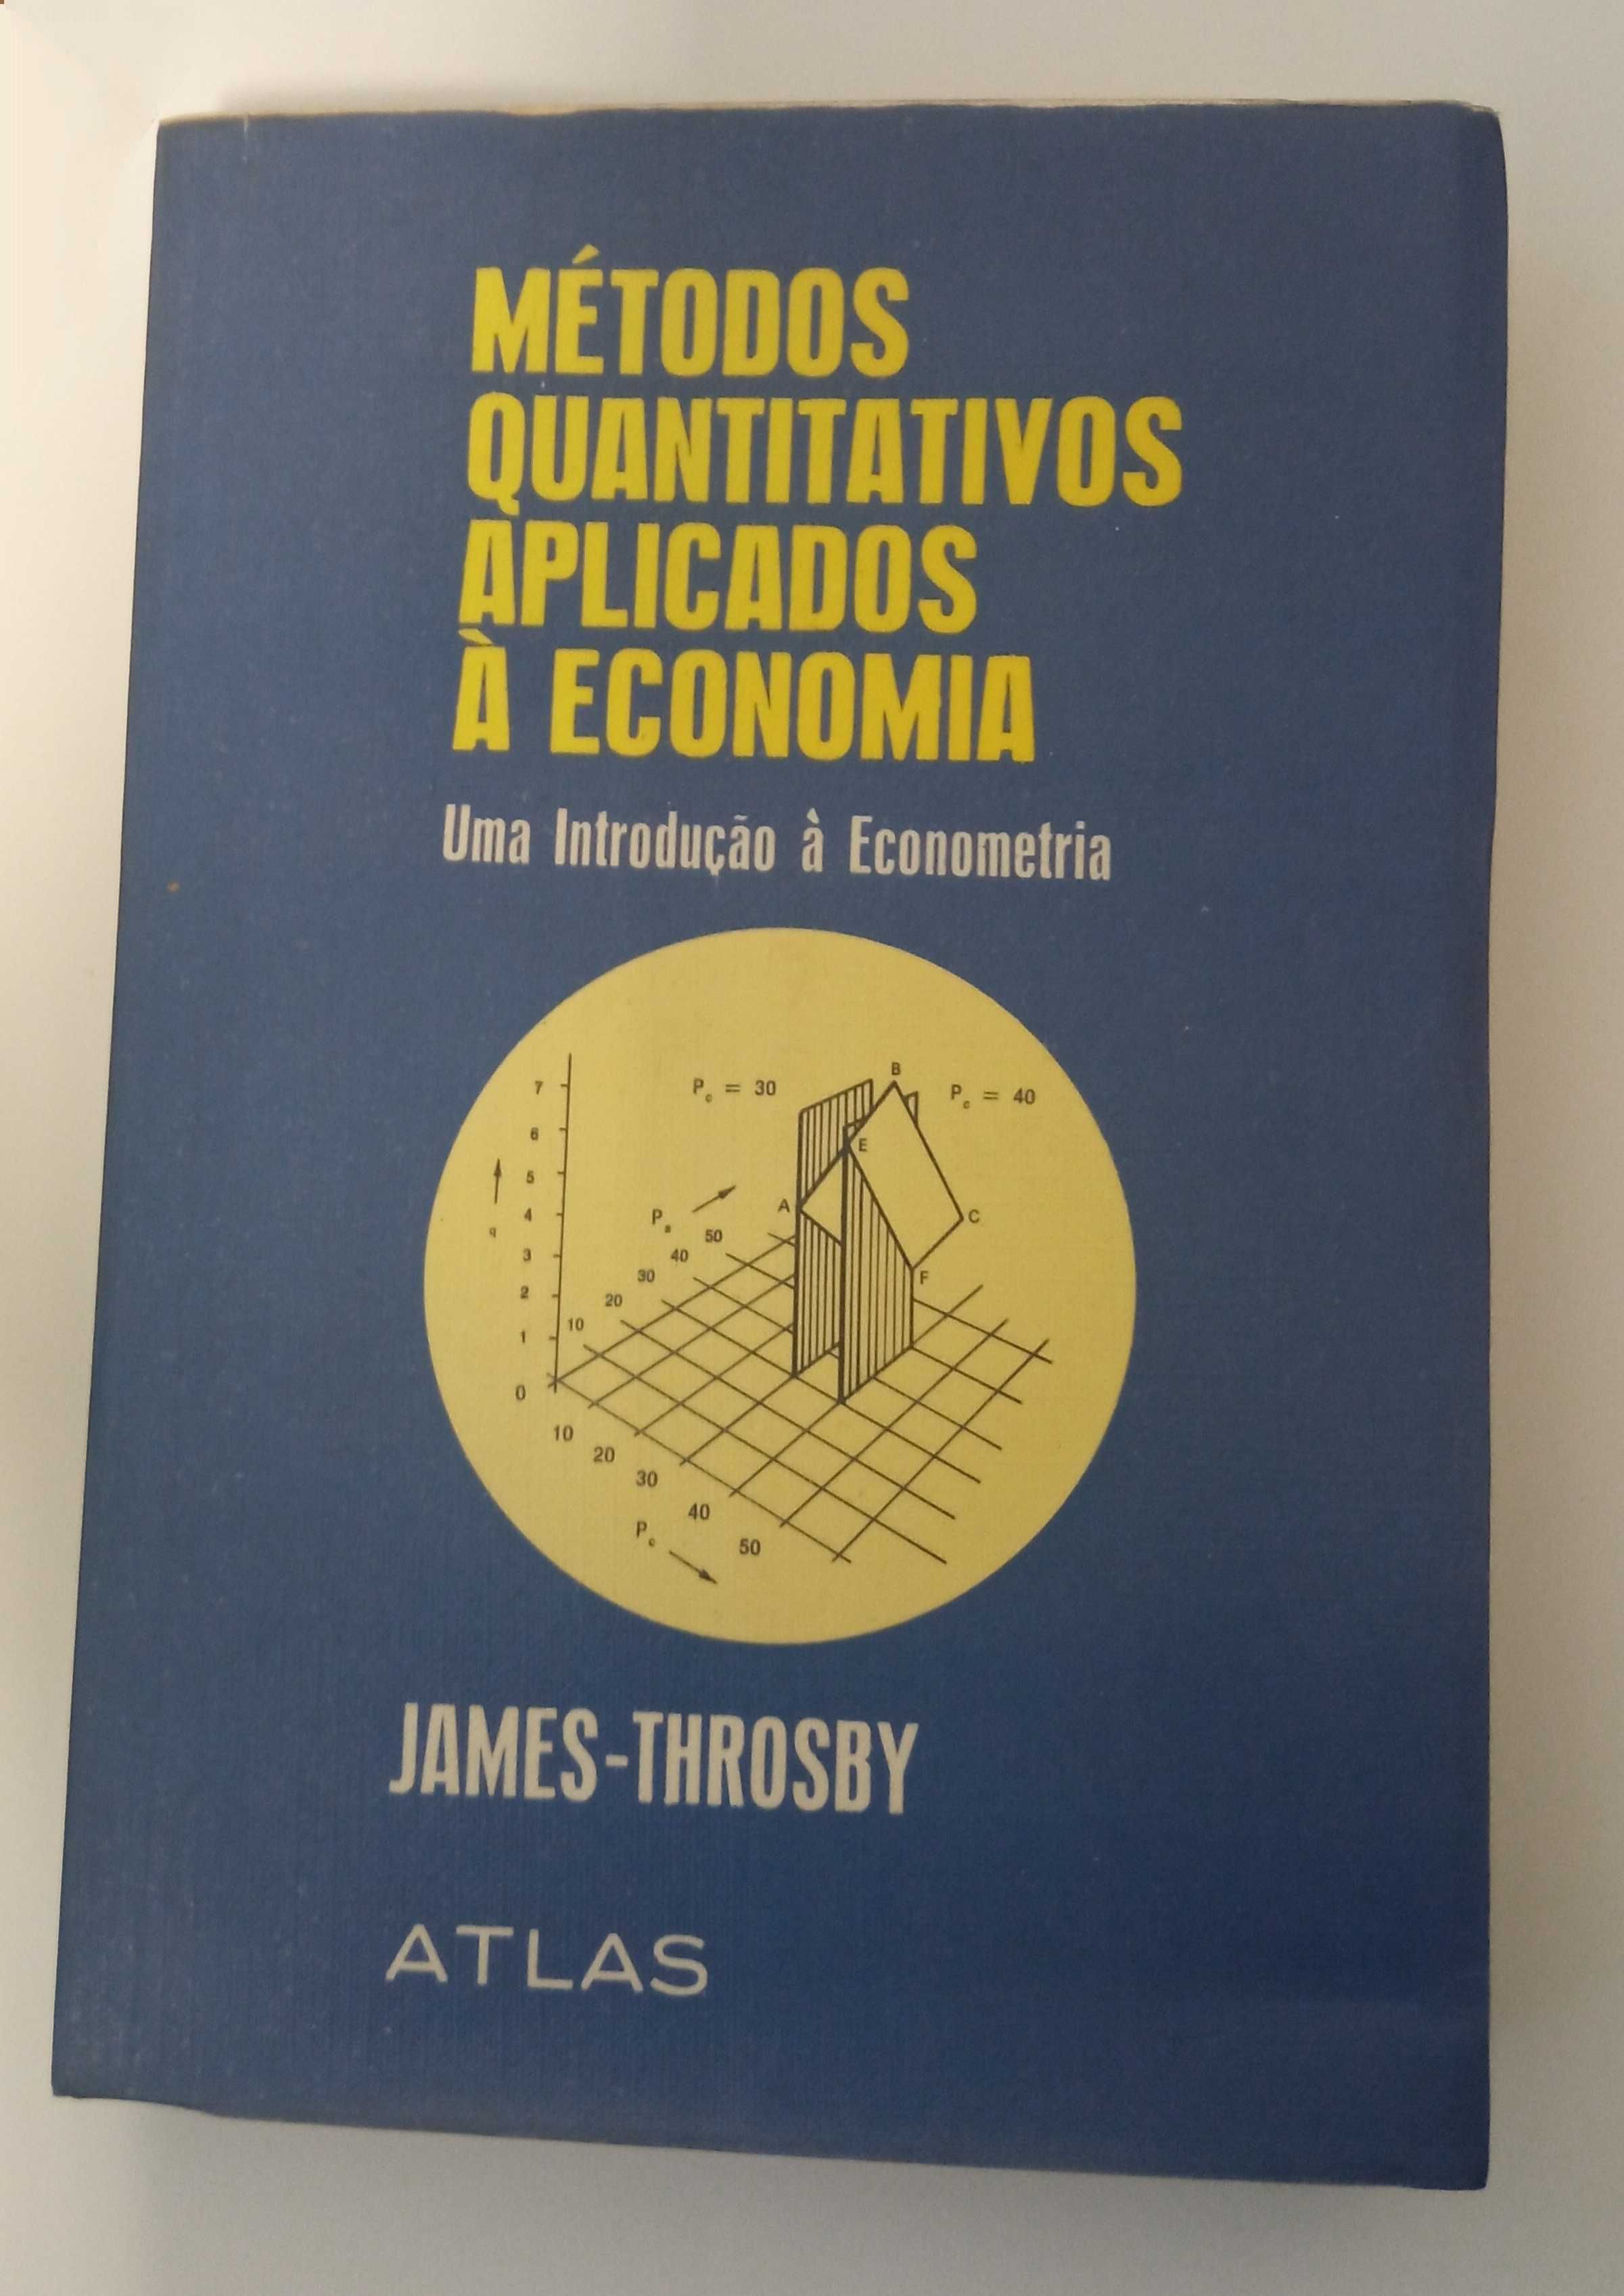 Métodos Quantitativos aplicados à economia, de James-Throsby